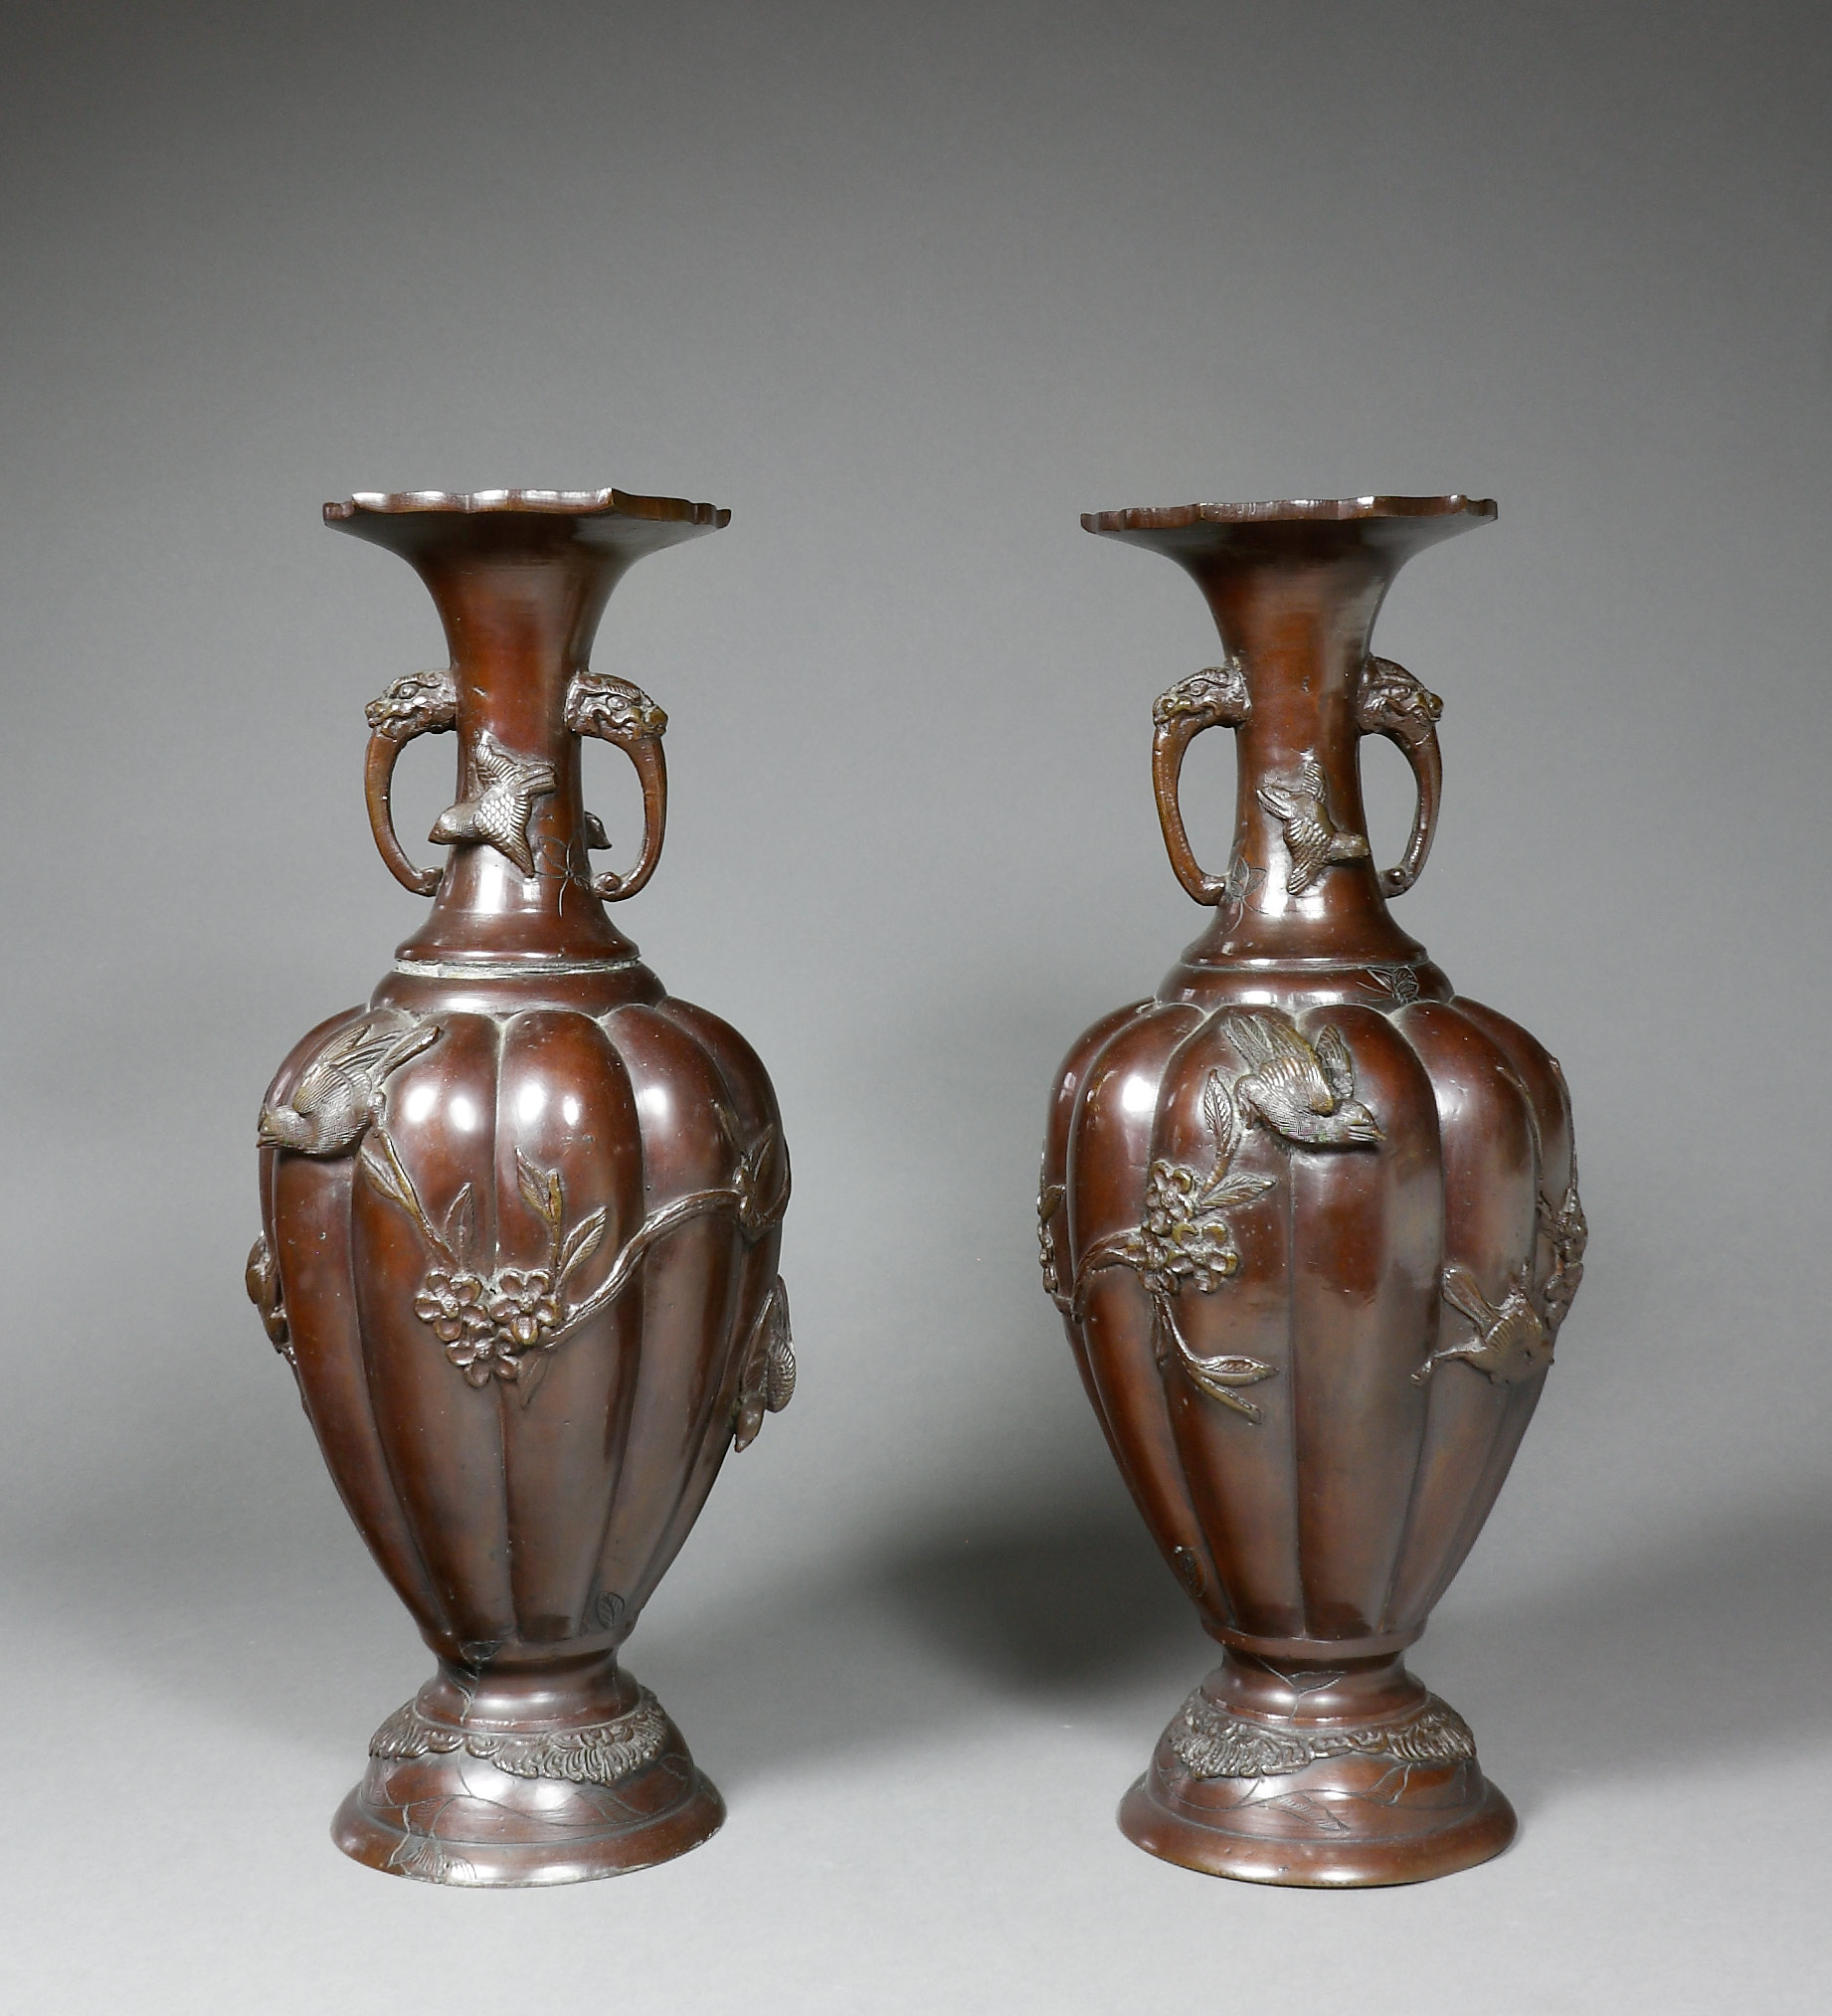 Auktionshaus Quentin Berlin Japan  Vasen  Bronze  Meiji  ein Paar Balusterform mit godronierter Wandung und erhabenem Reliefdekor von VÃ¶geln und Blumen. Am eingezogenen Hals z